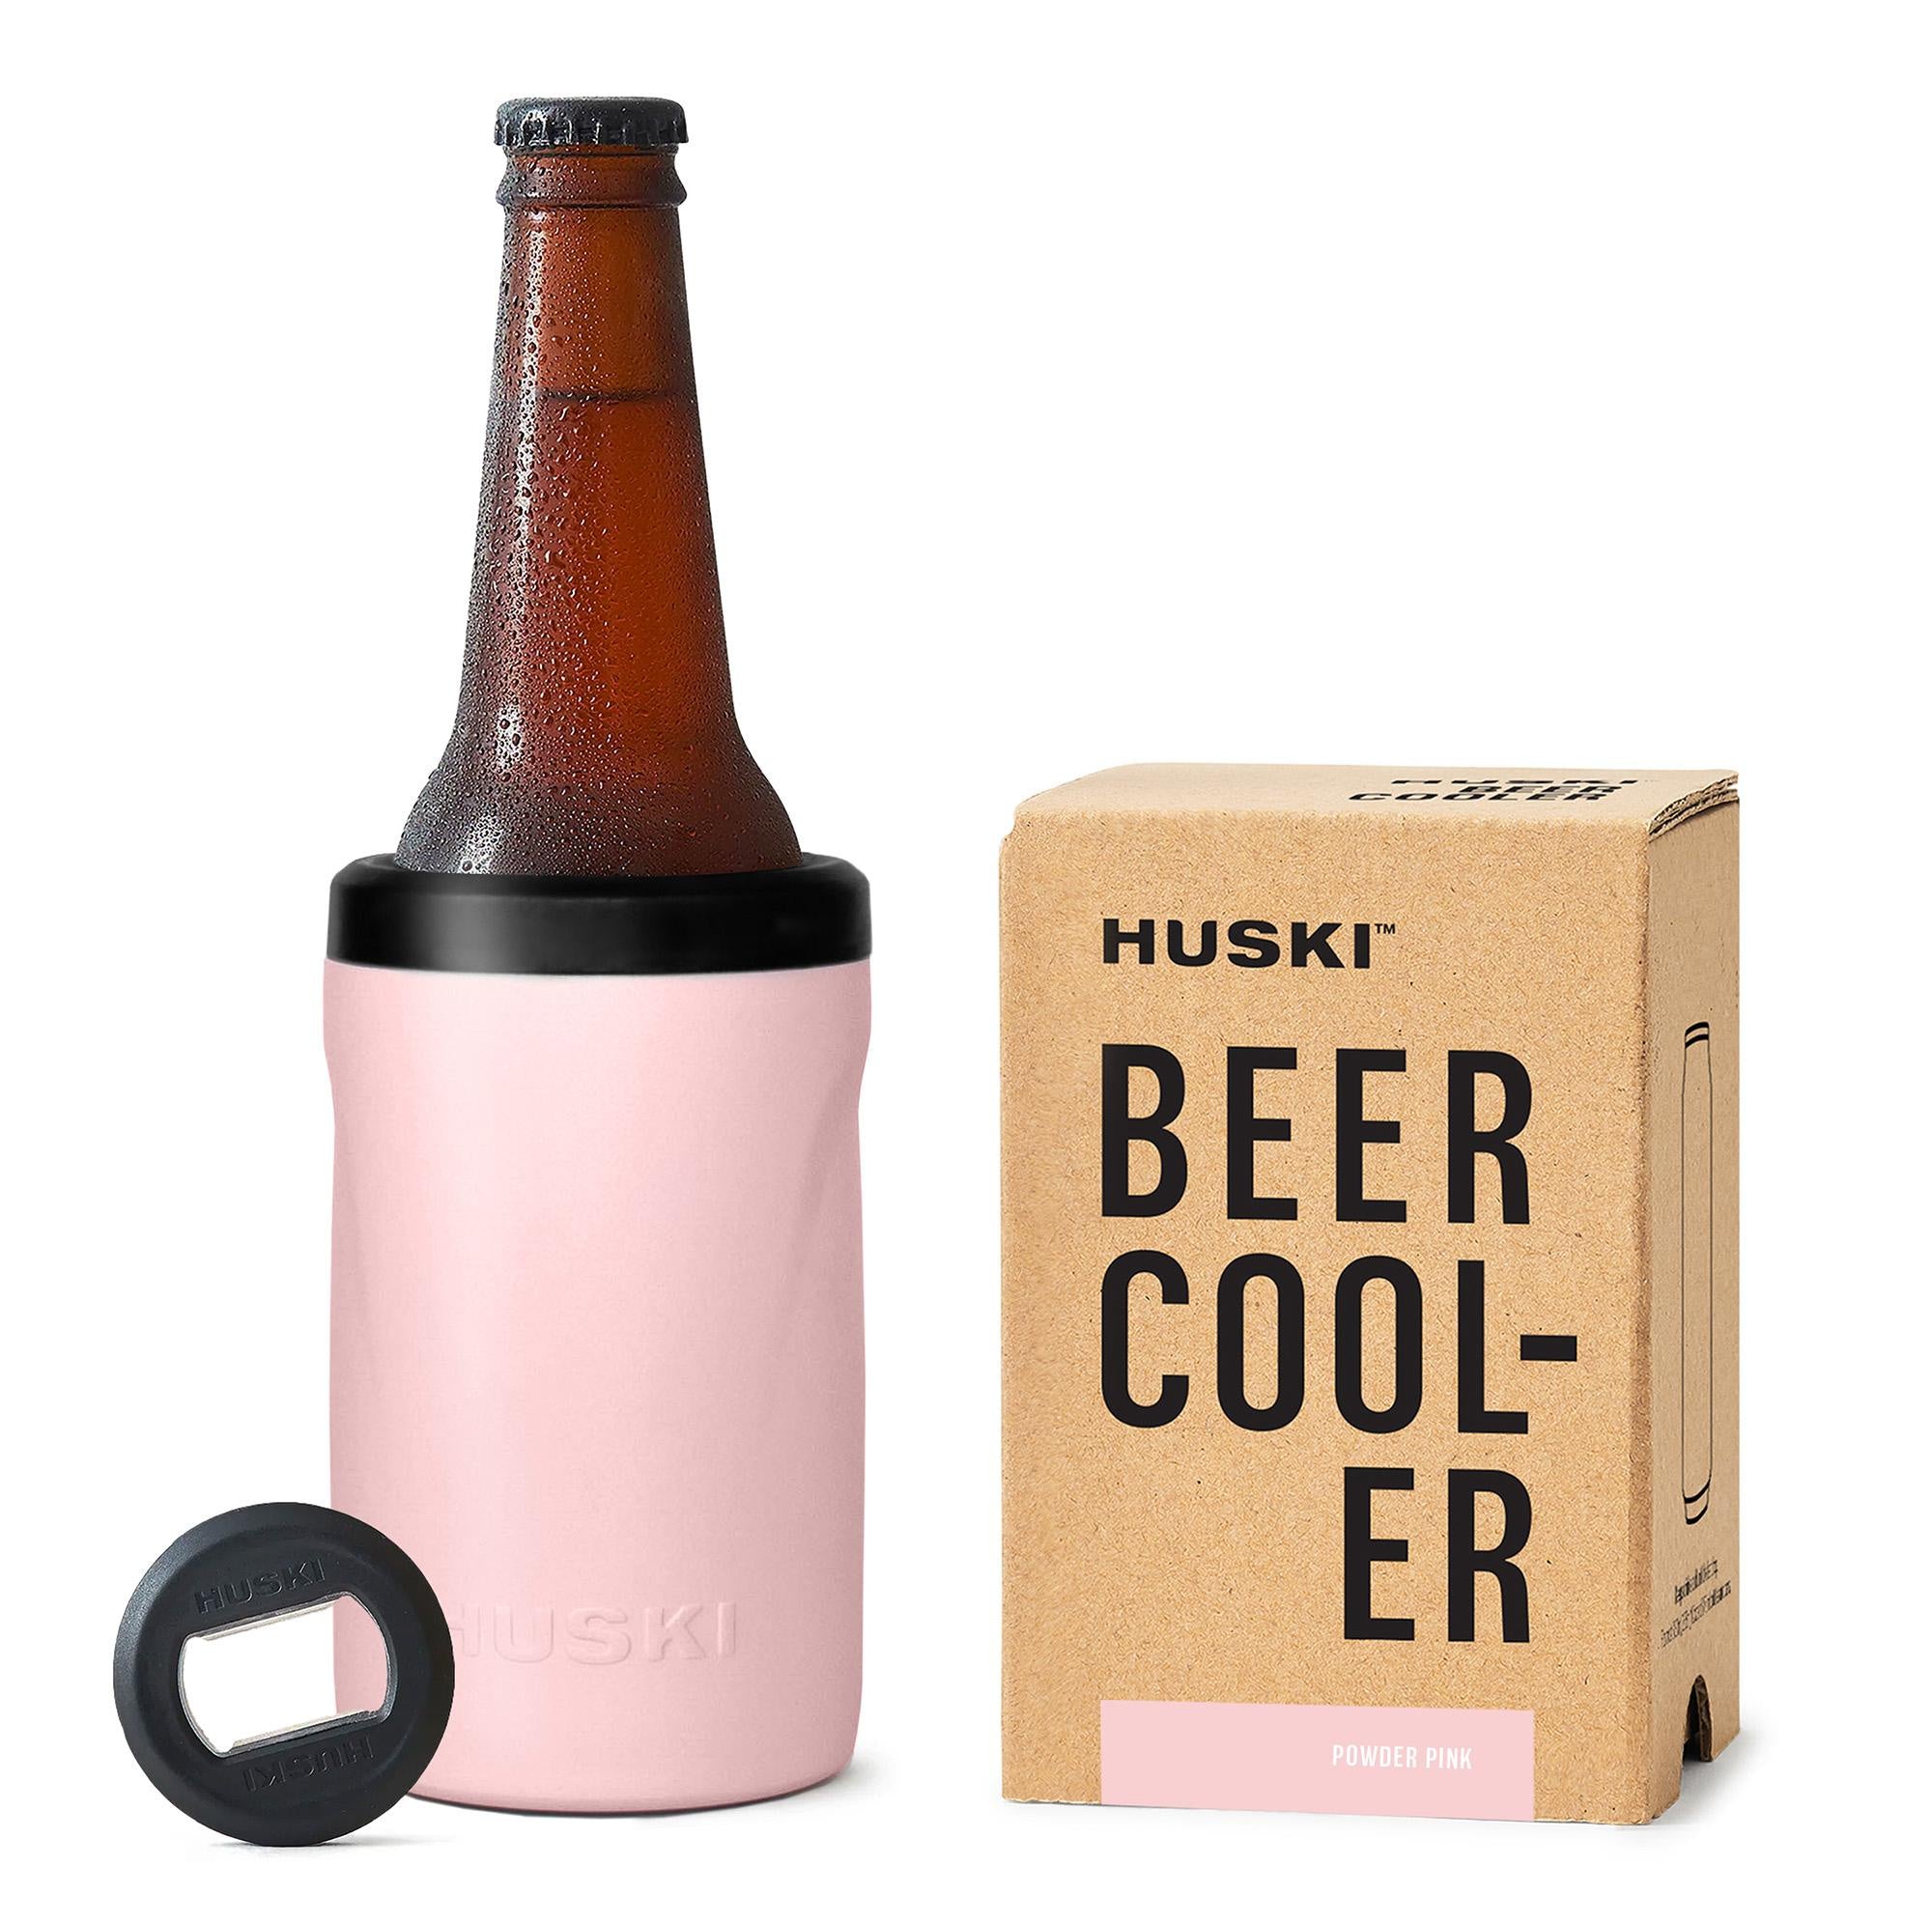 Huski Beer Cooler 2.0 Limited Edition - Powder Pink